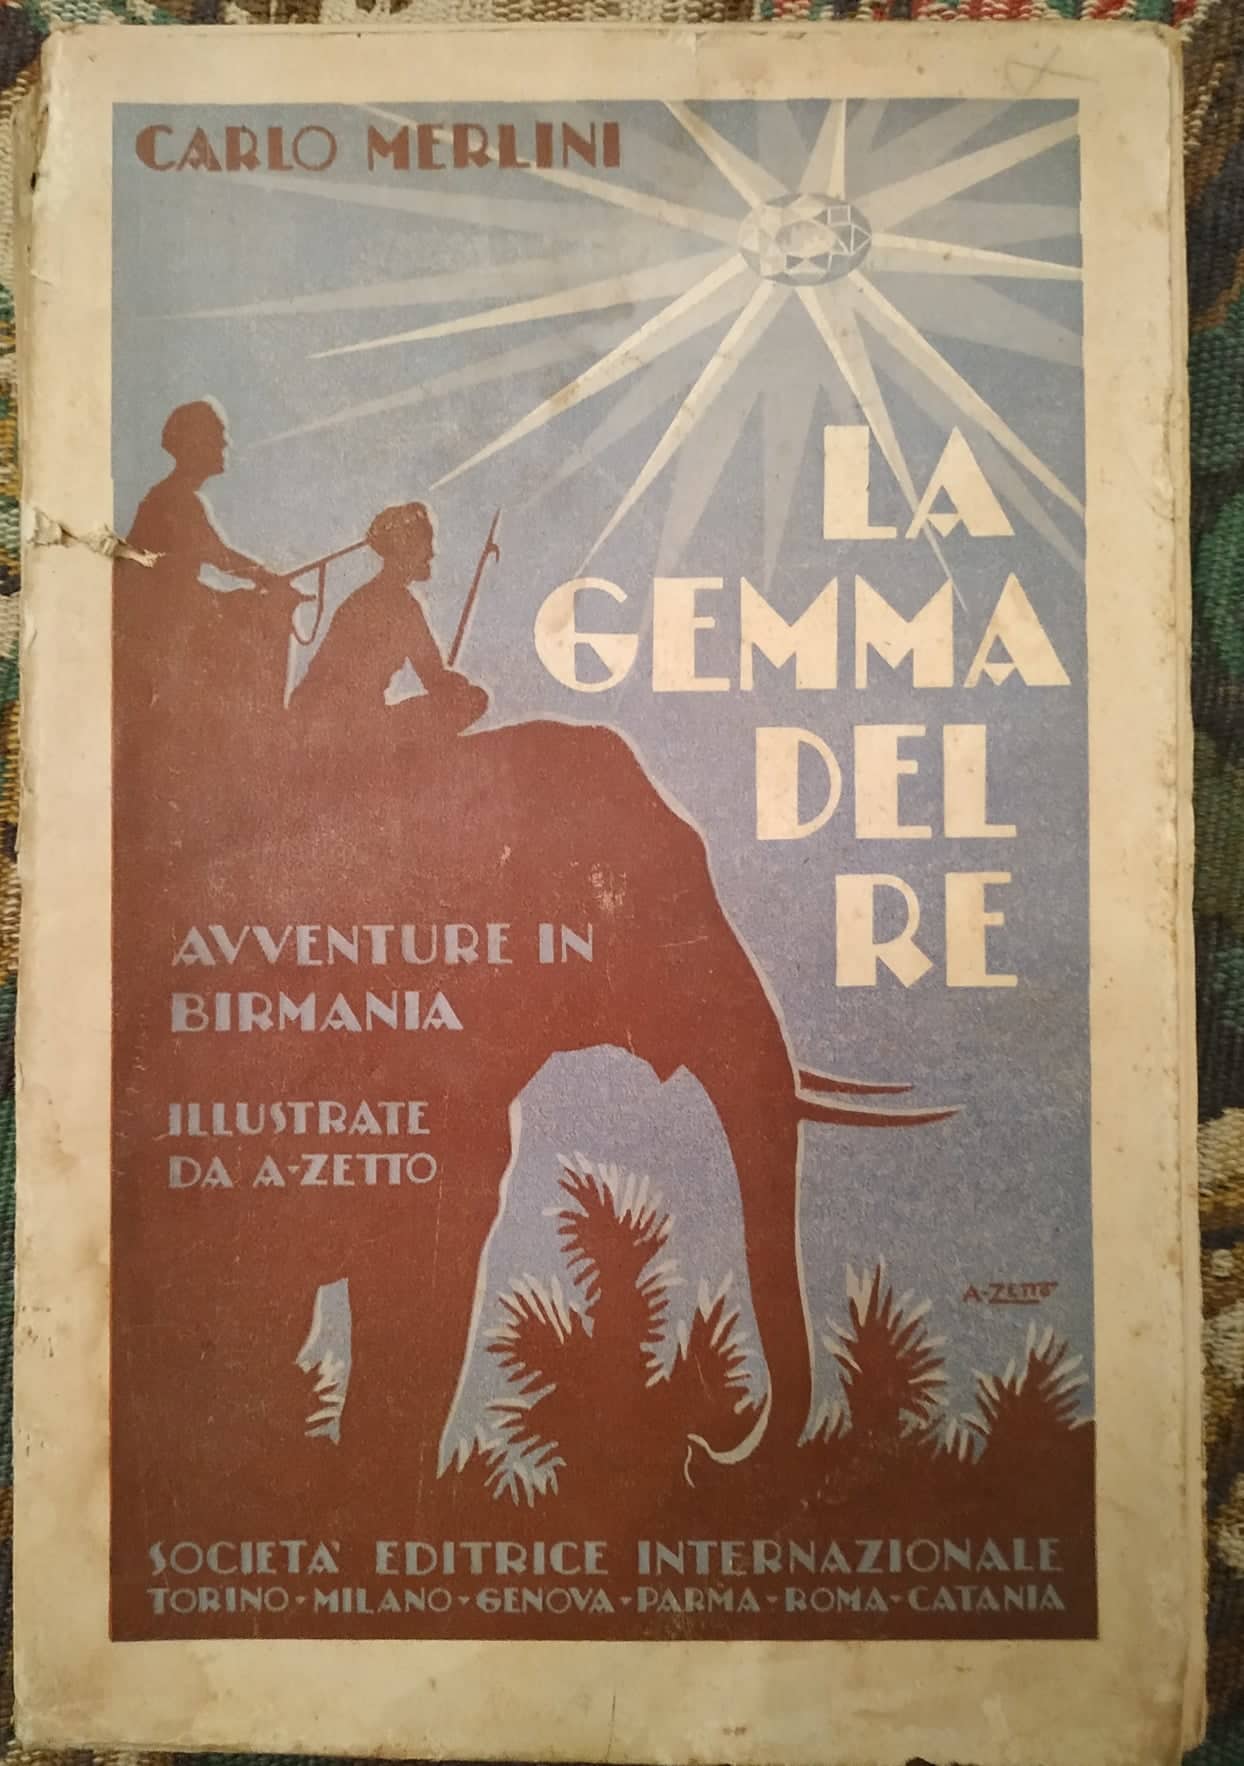 “La gemma del re” (1930) di Carlo Merlini: un romanzo scomparso da riscoprire